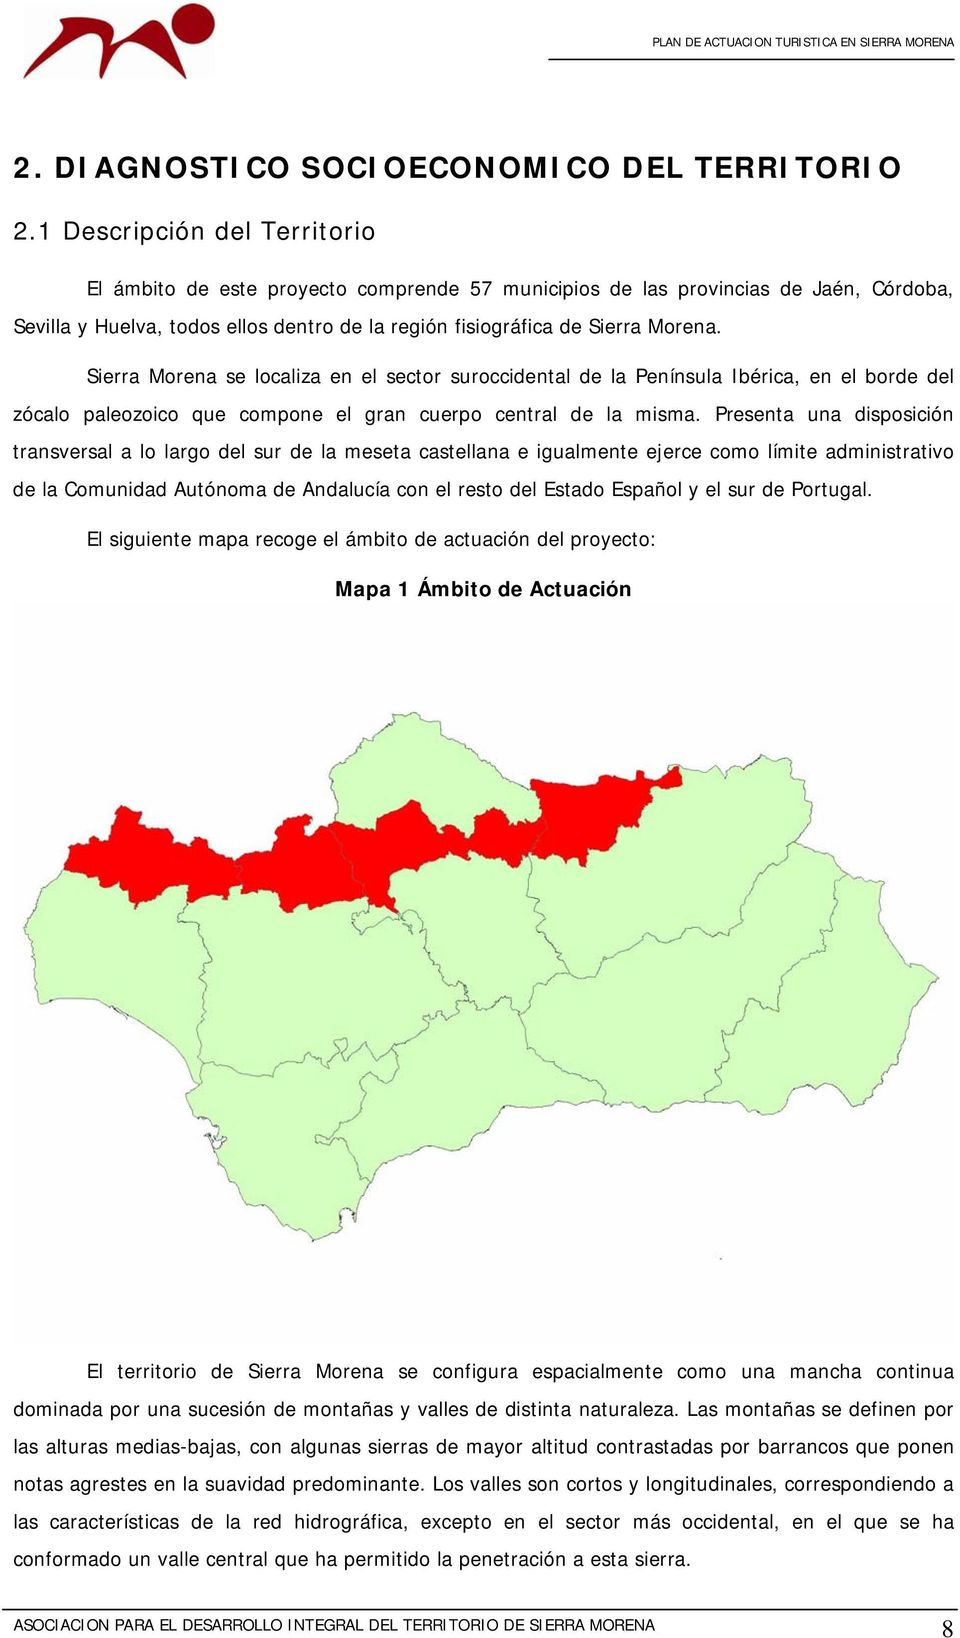 Sierra Morena se localiza en el sector suroccidental de la Península Ibérica, en el borde del zócalo paleozoico que compone el gran cuerpo central de la misma.